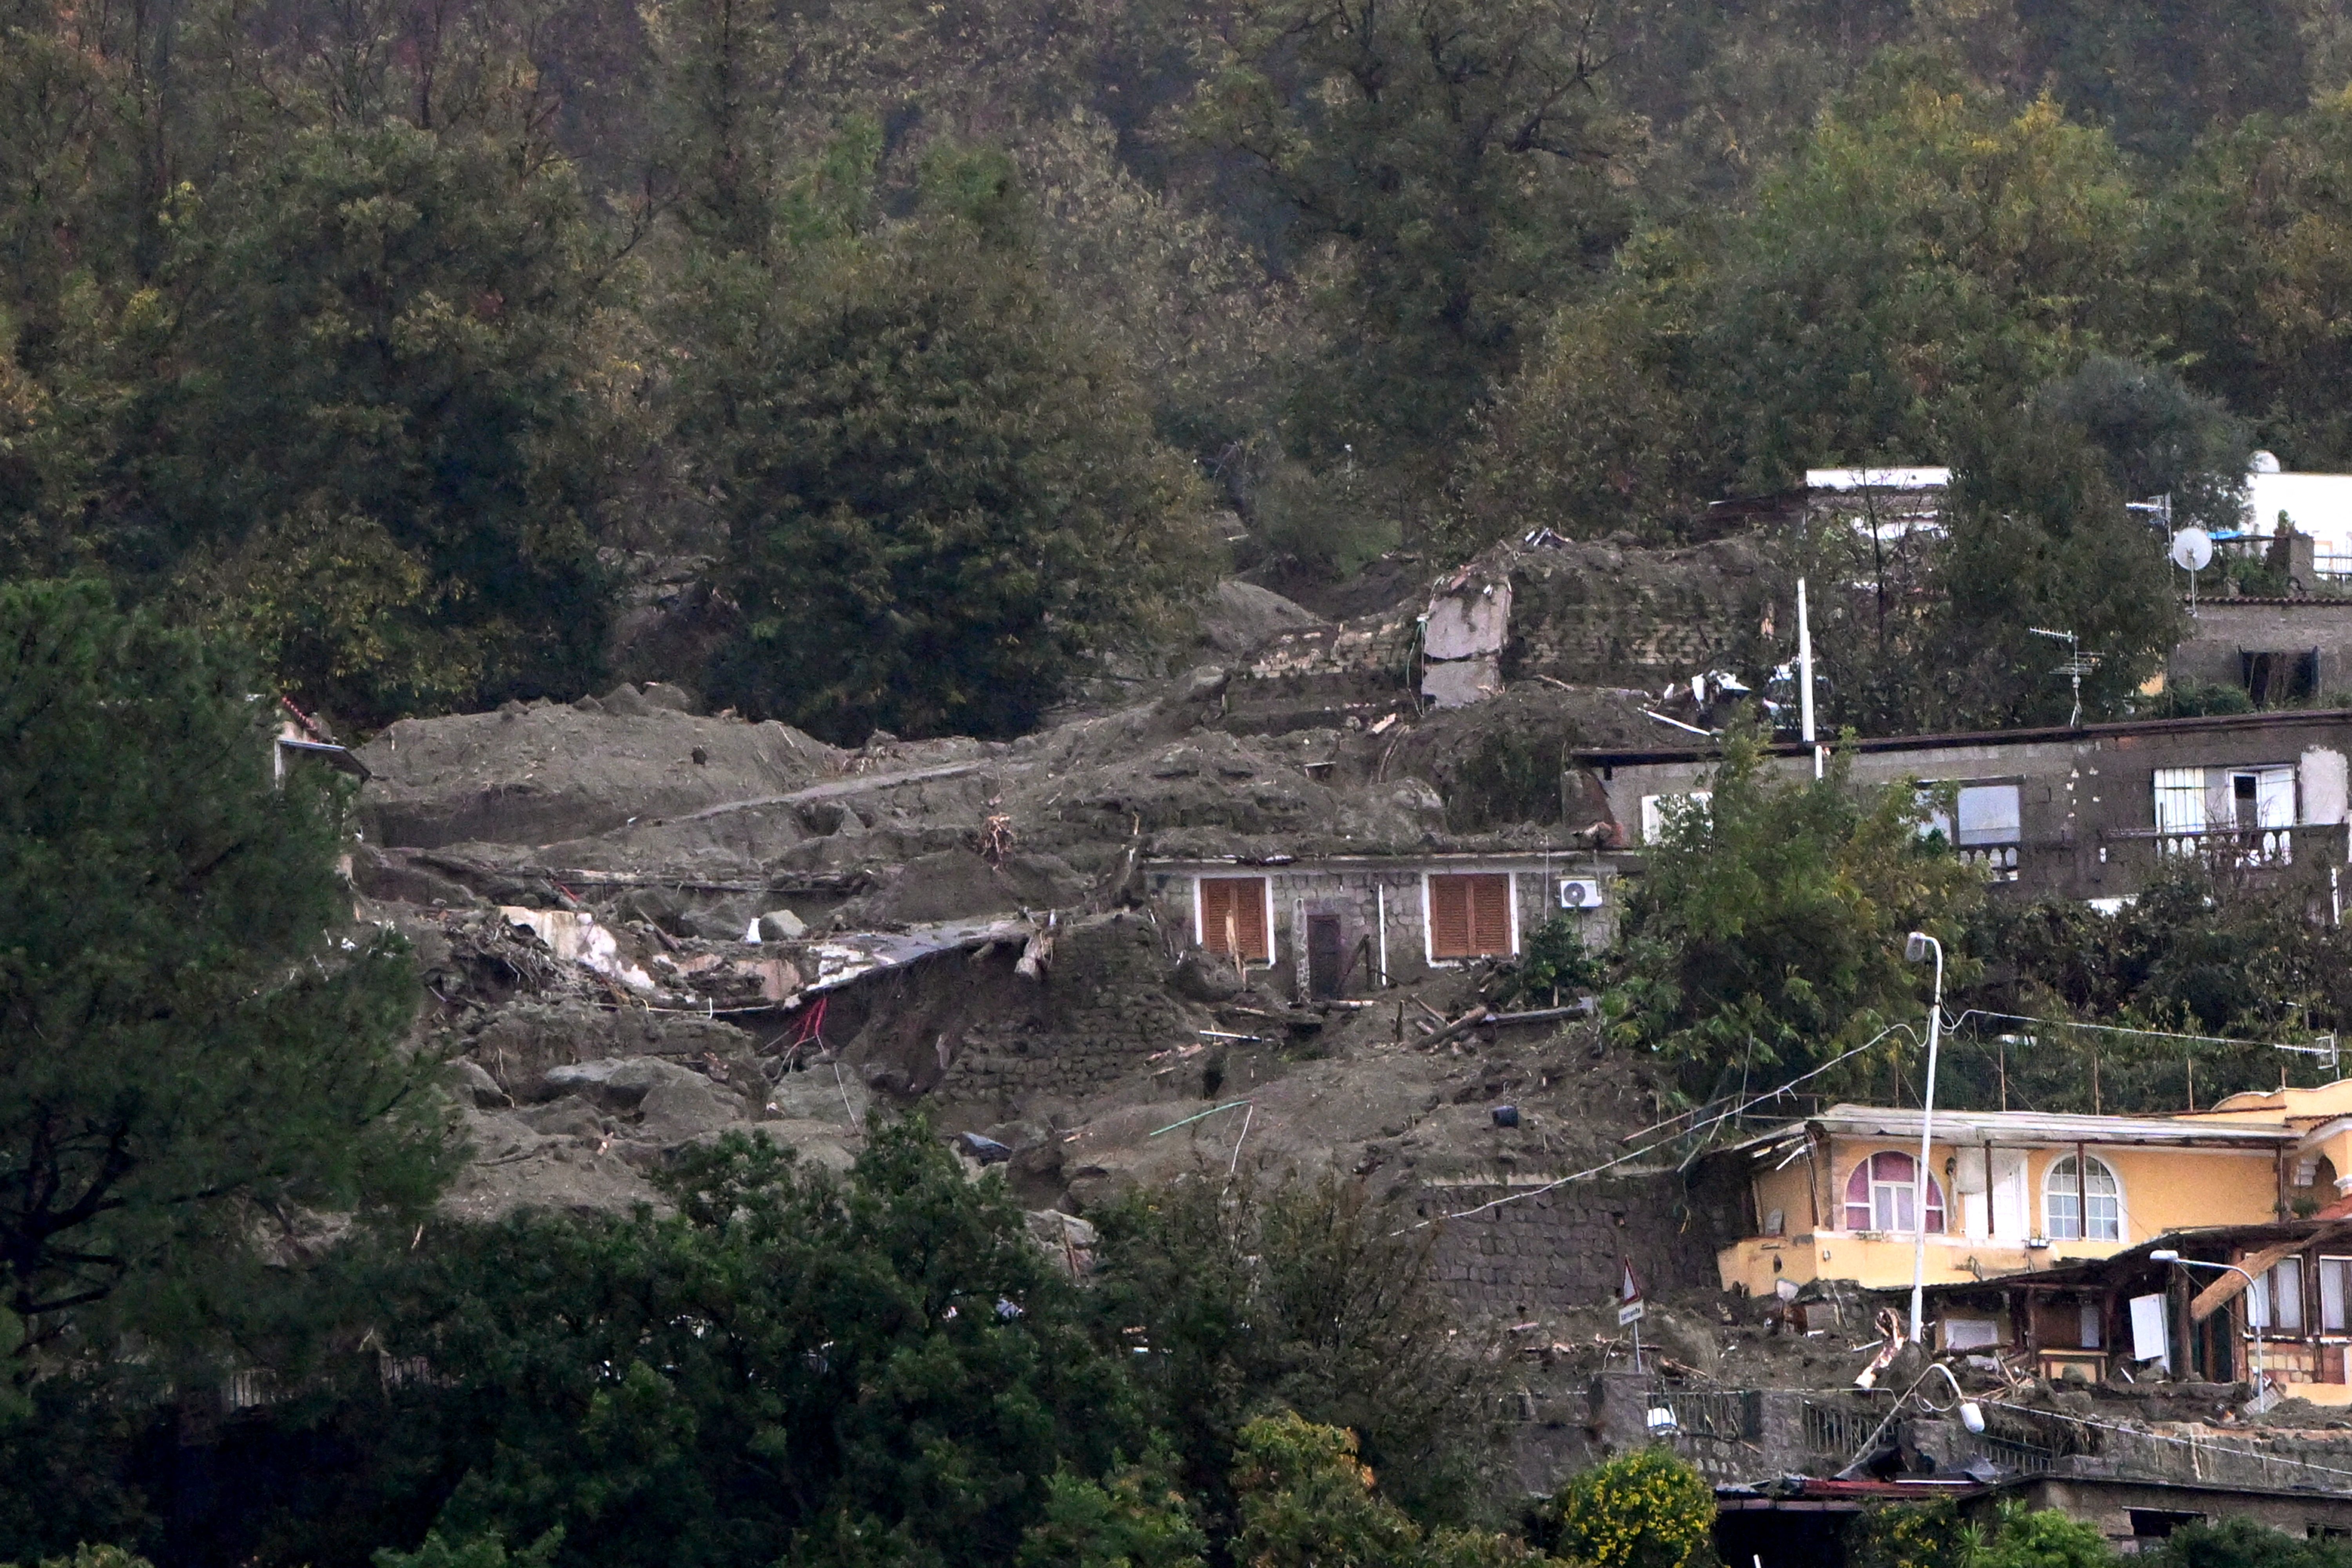 Two dead, dozens missing after landslide on highway in Brazil